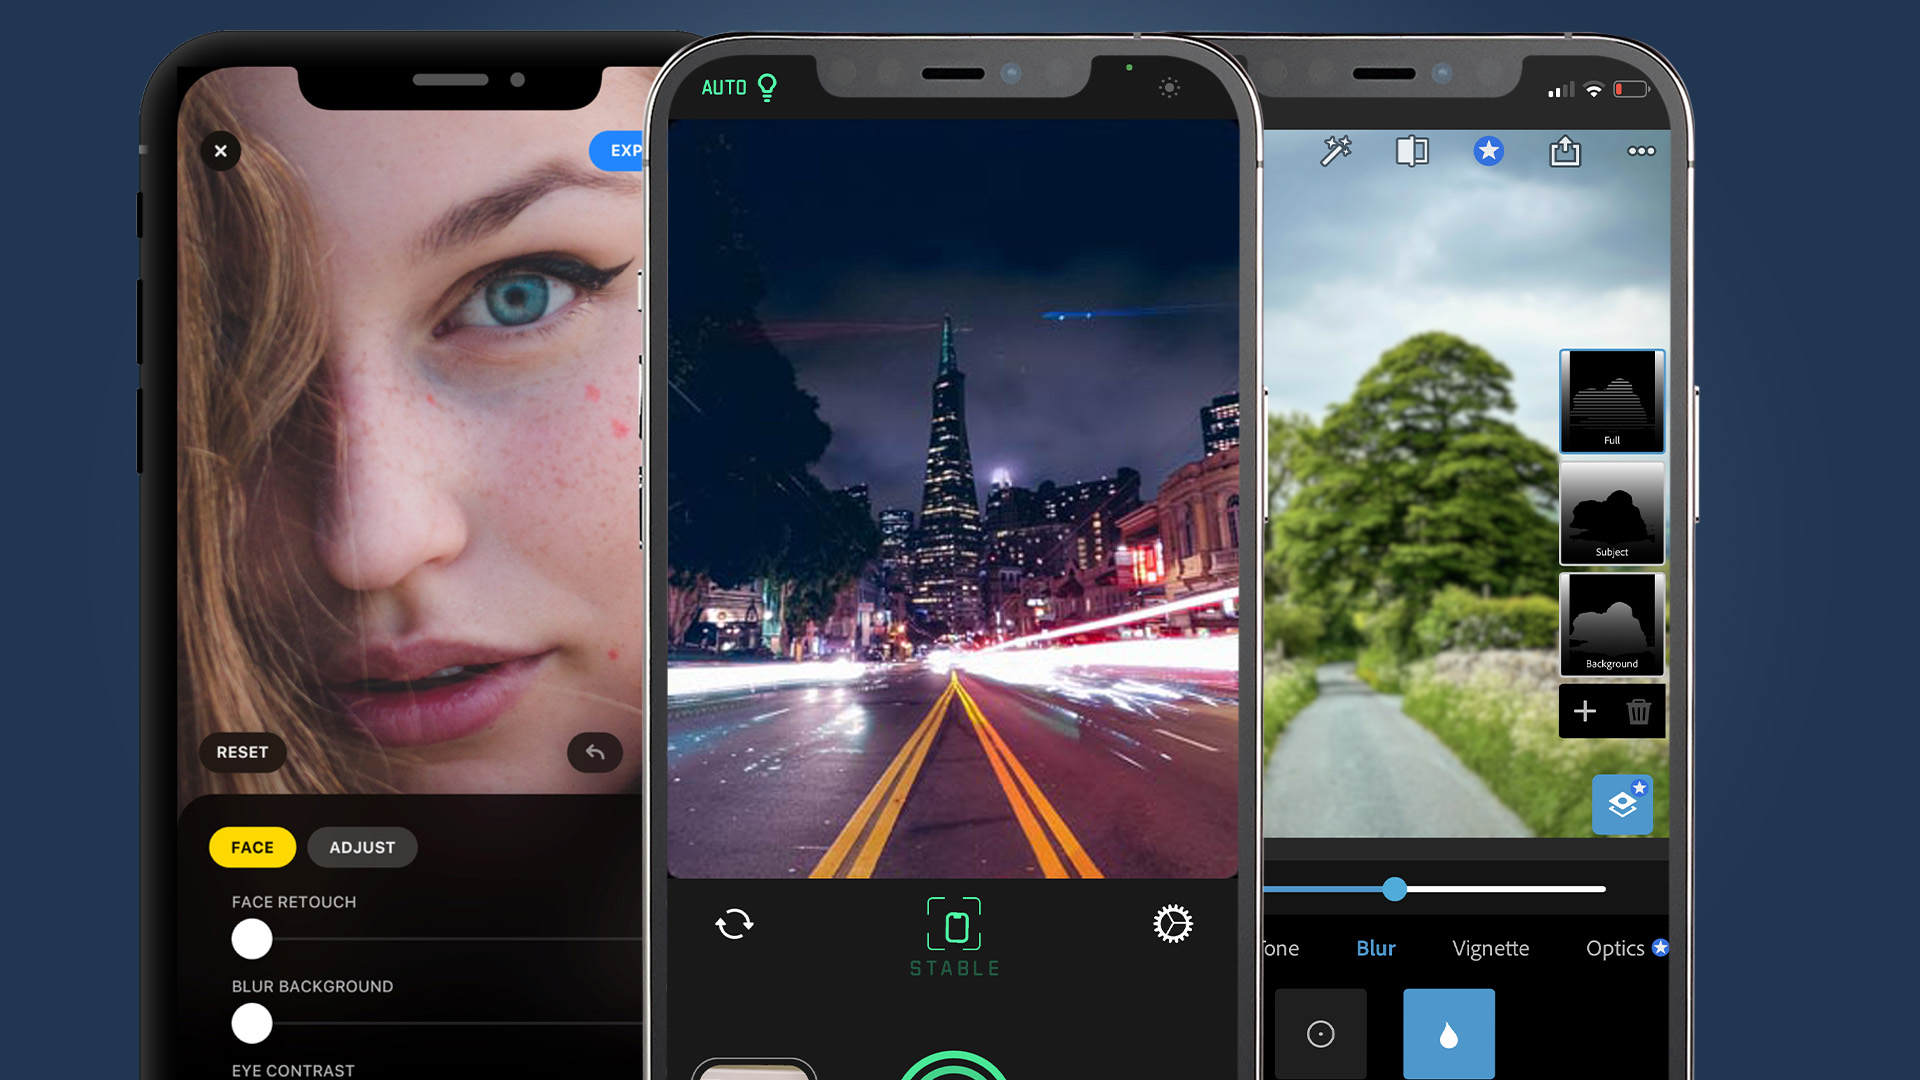 Không cần phải sử dụng máy ảnh DSLR, bạn vẫn có thể tạo ra những bức ảnh có hiệu ứng tuyệt đẹp như DSLR trên iOS. Thử tìm hiểu và sử dụng các tính năng trong ứng dụng camera trên iPhone để tạo nên những bức ảnh đẹp và ấn tượng nhất!